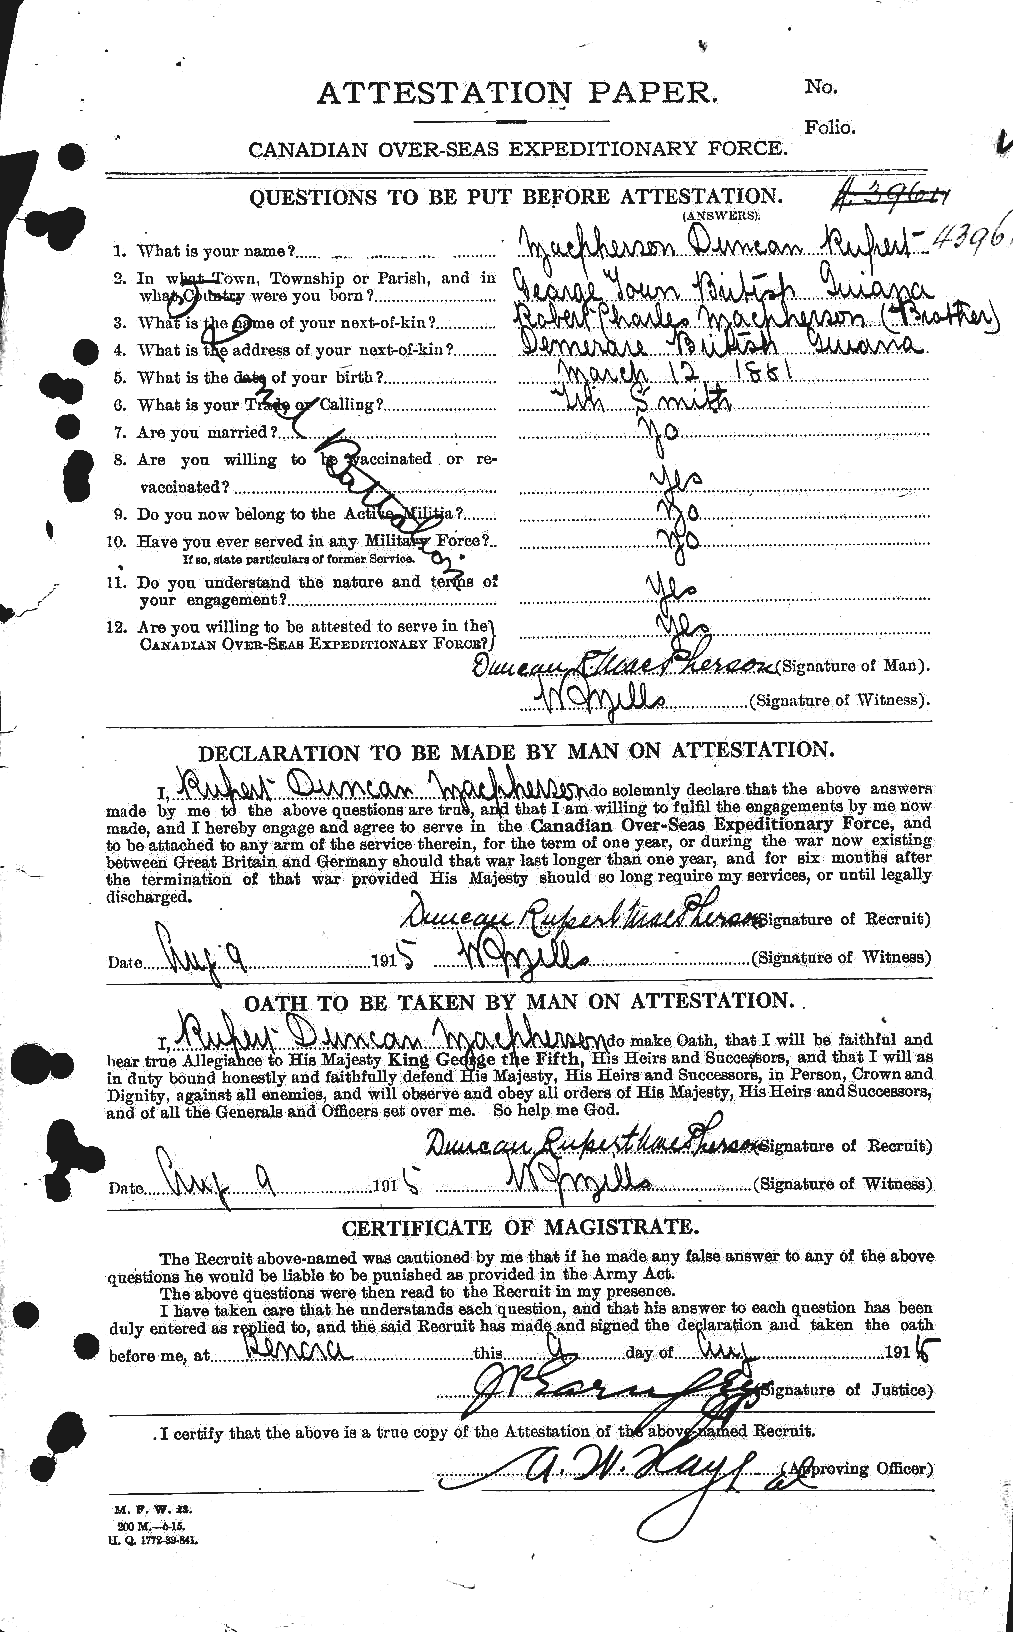 Dossiers du Personnel de la Première Guerre mondiale - CEC 541517a